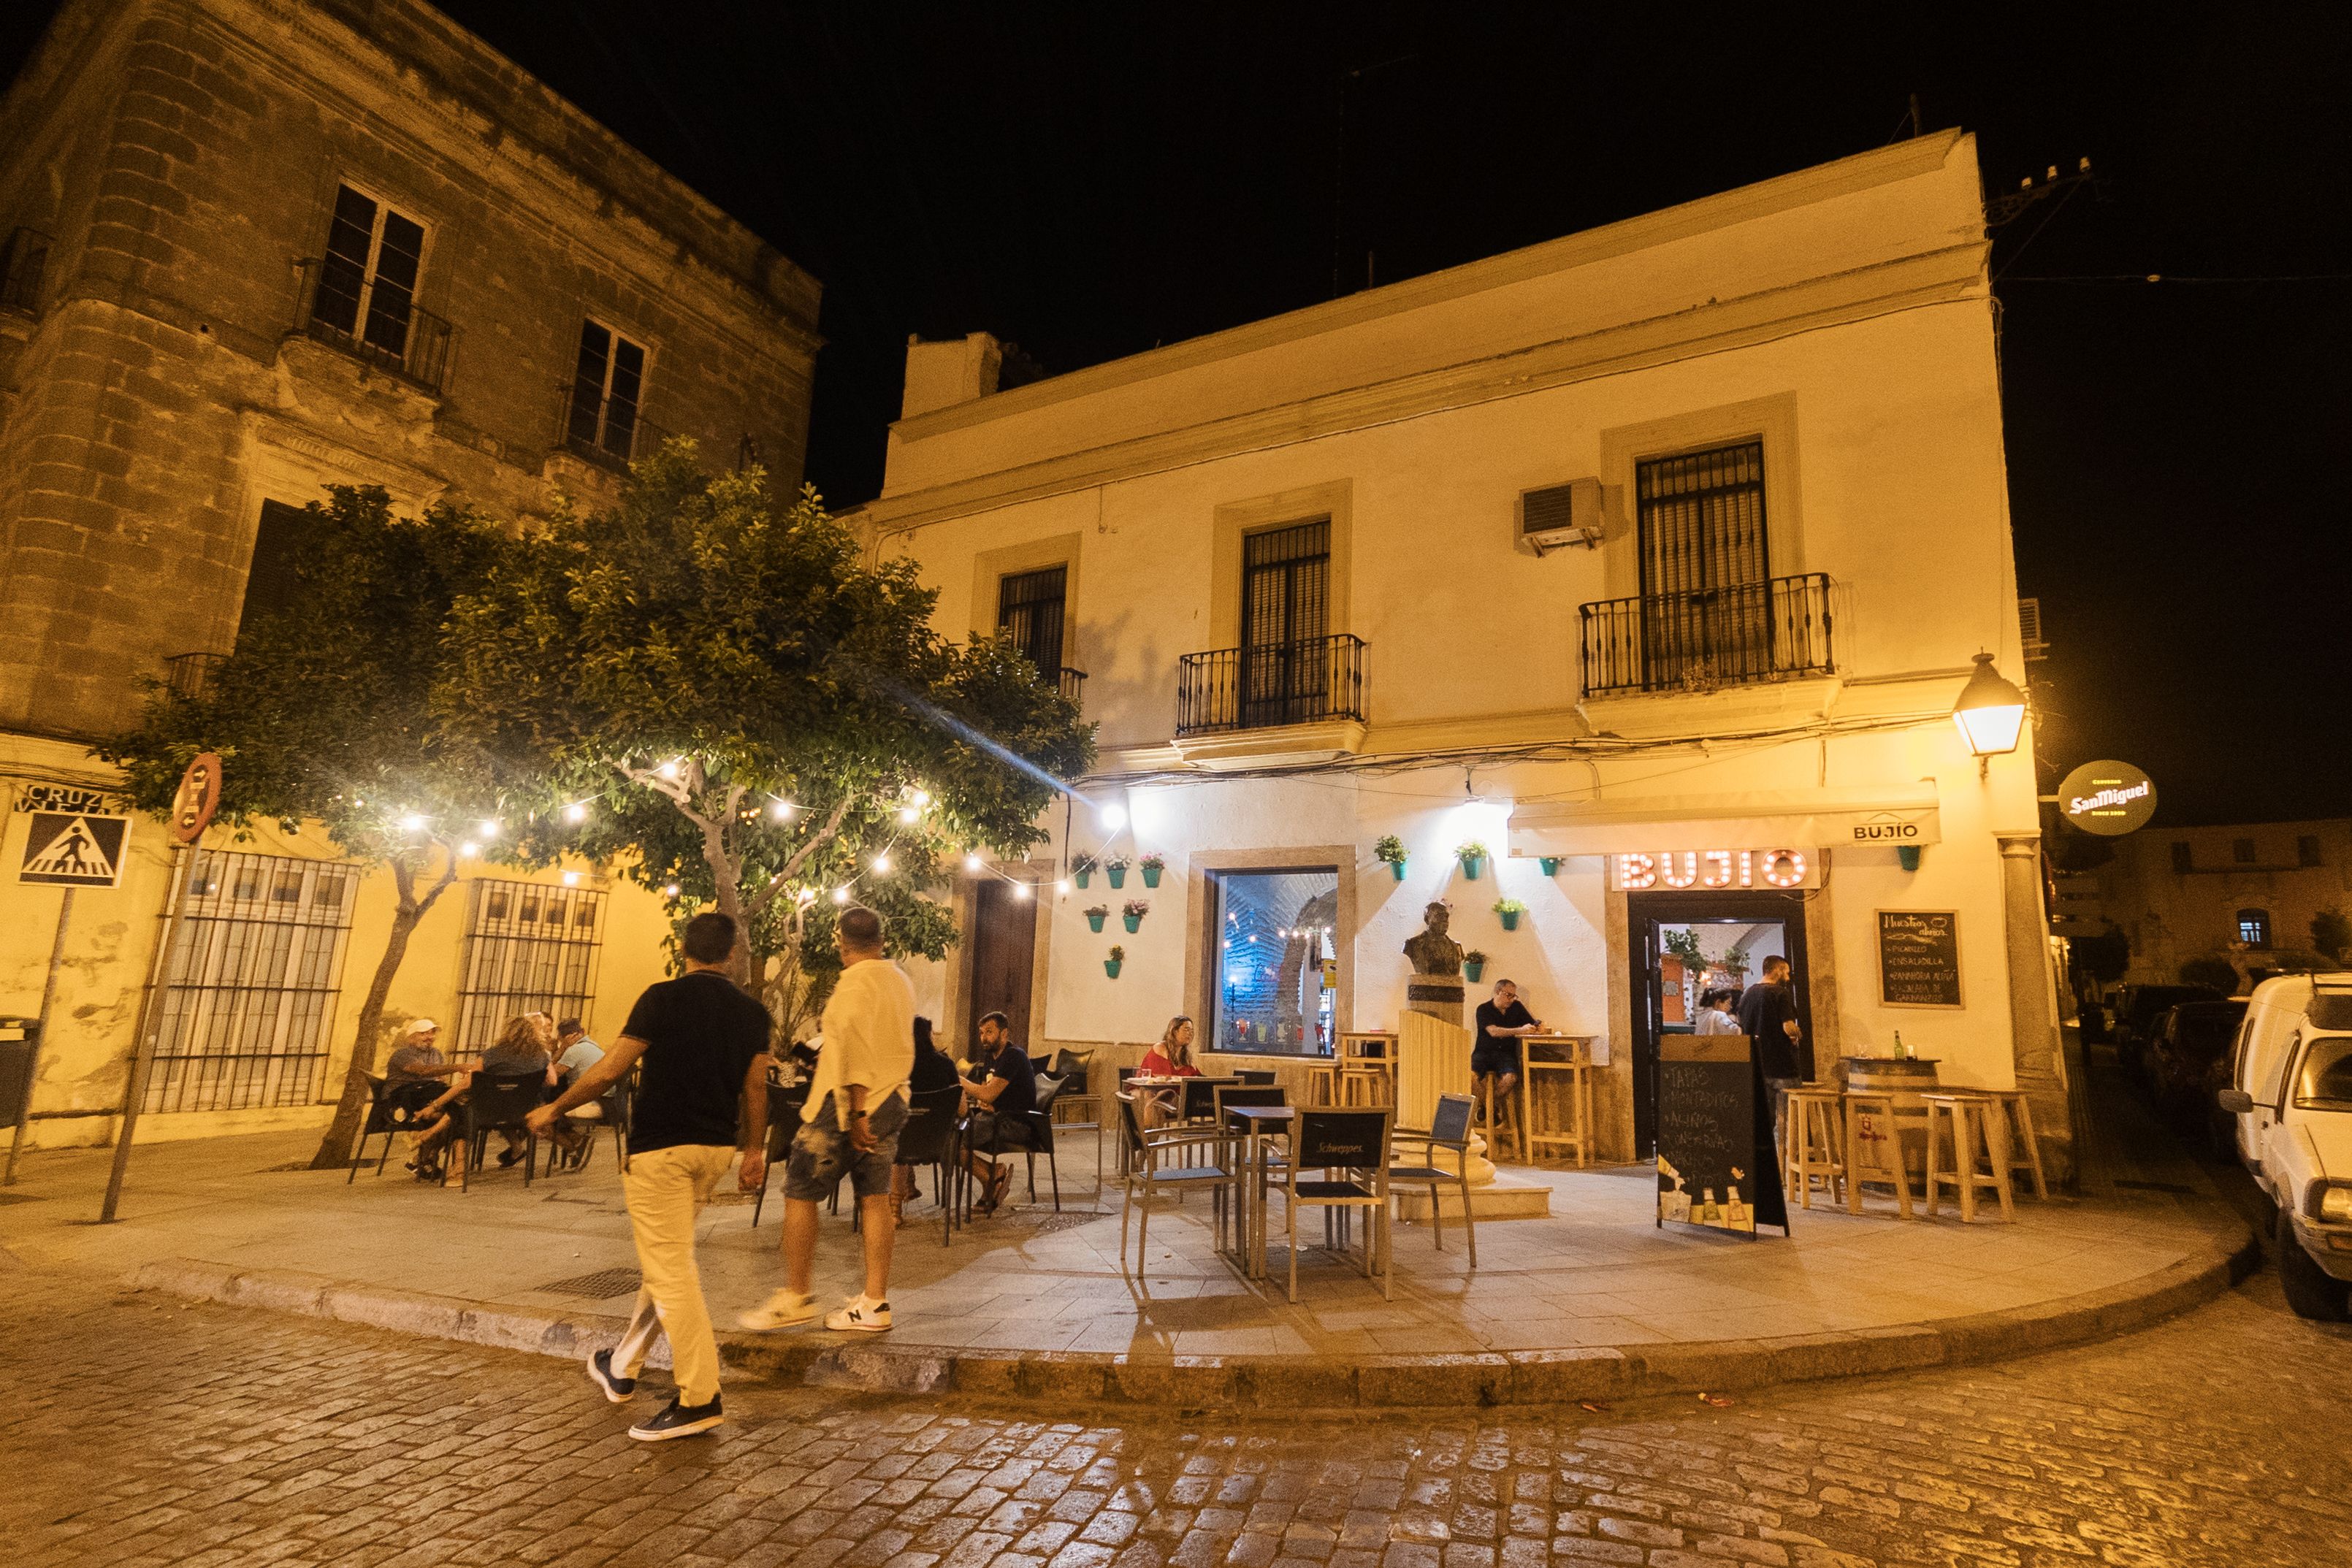 El Bujío es un local abierto recientemente en el centro de Jerez que pretende ofrecer no solo comida y bebida, sino también exposiciones, conciertos y mercadillos.